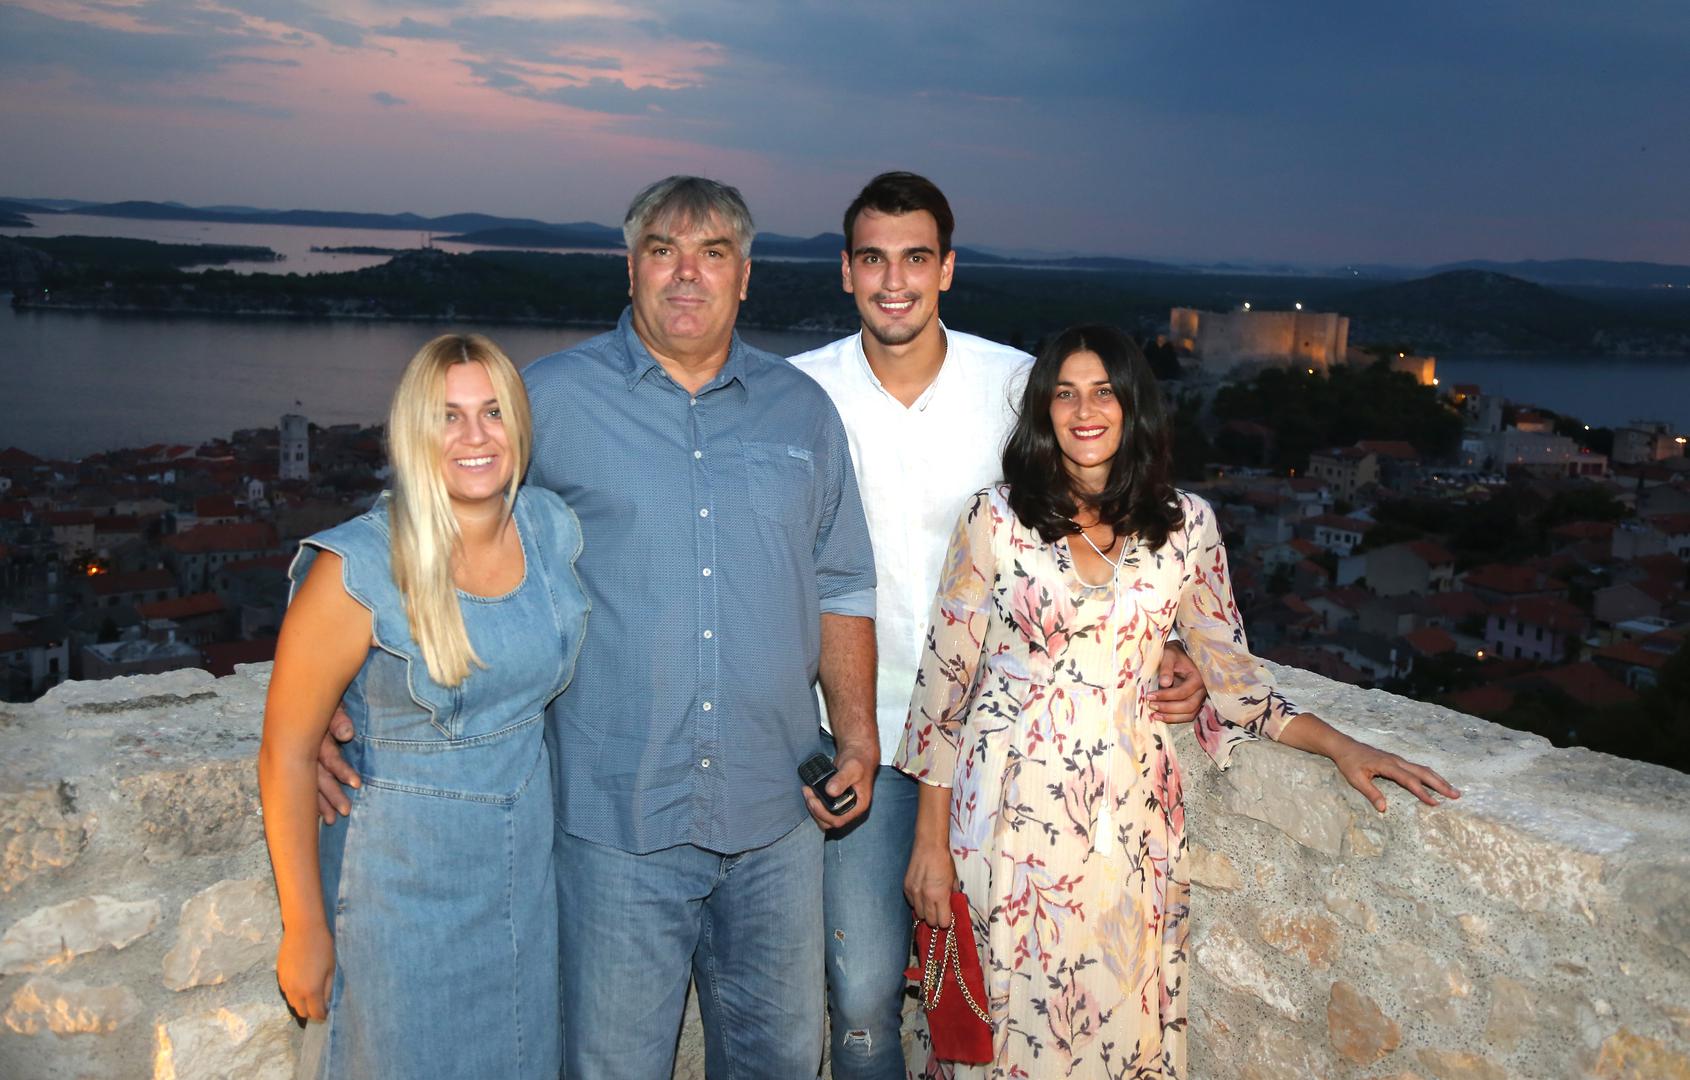 U gradu sa četiri tvrđave, na jednoj od njih (Barone), održana je pretpremijera dokumentarnog filma o šibenskoj košarkaškoj obitelji Šarić. 

